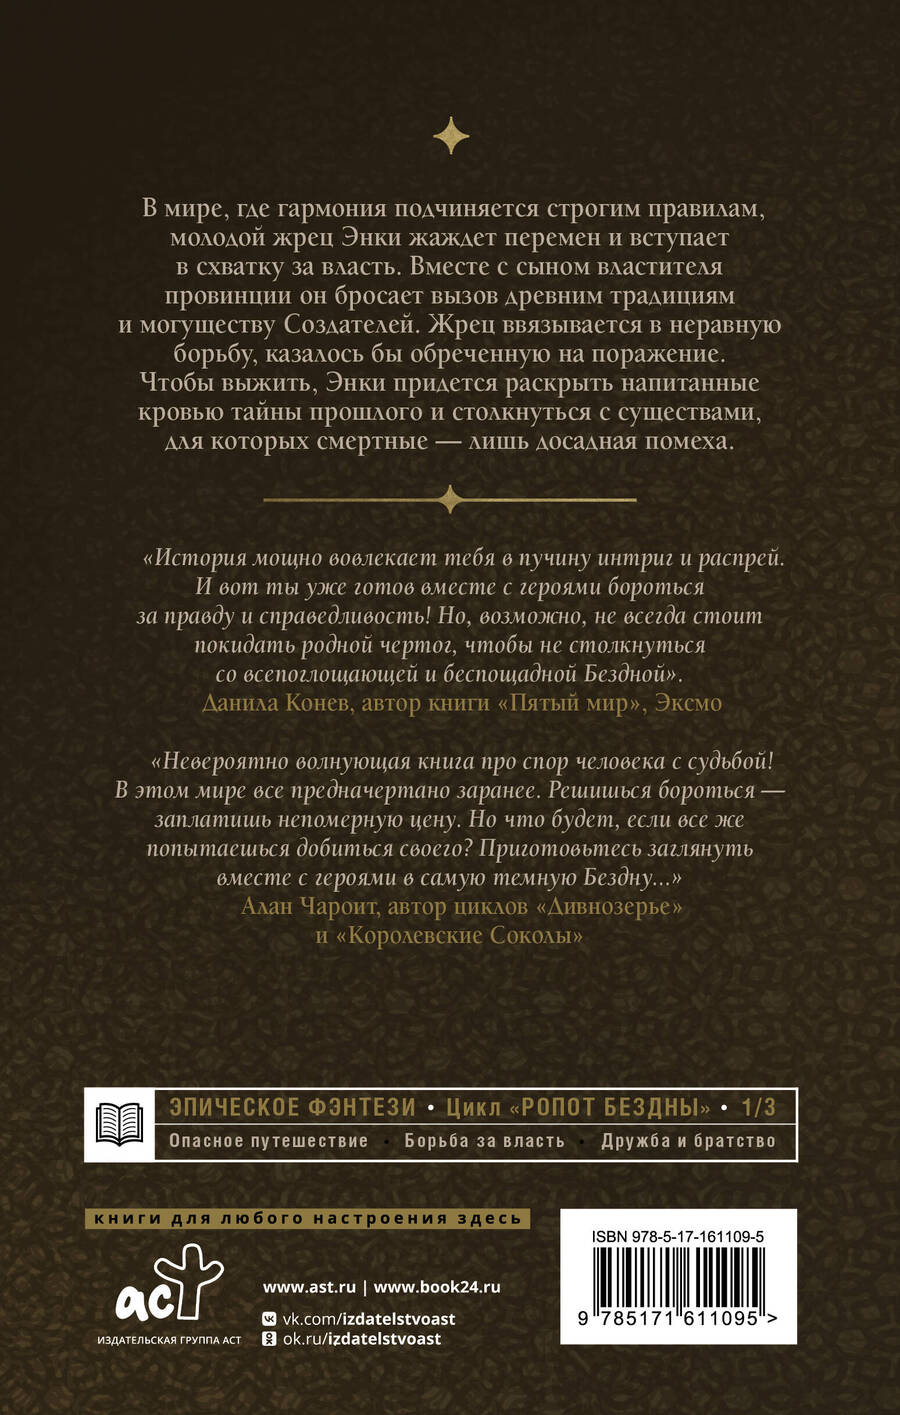 Обложка книги "Лео Витман: Ропот бездны"